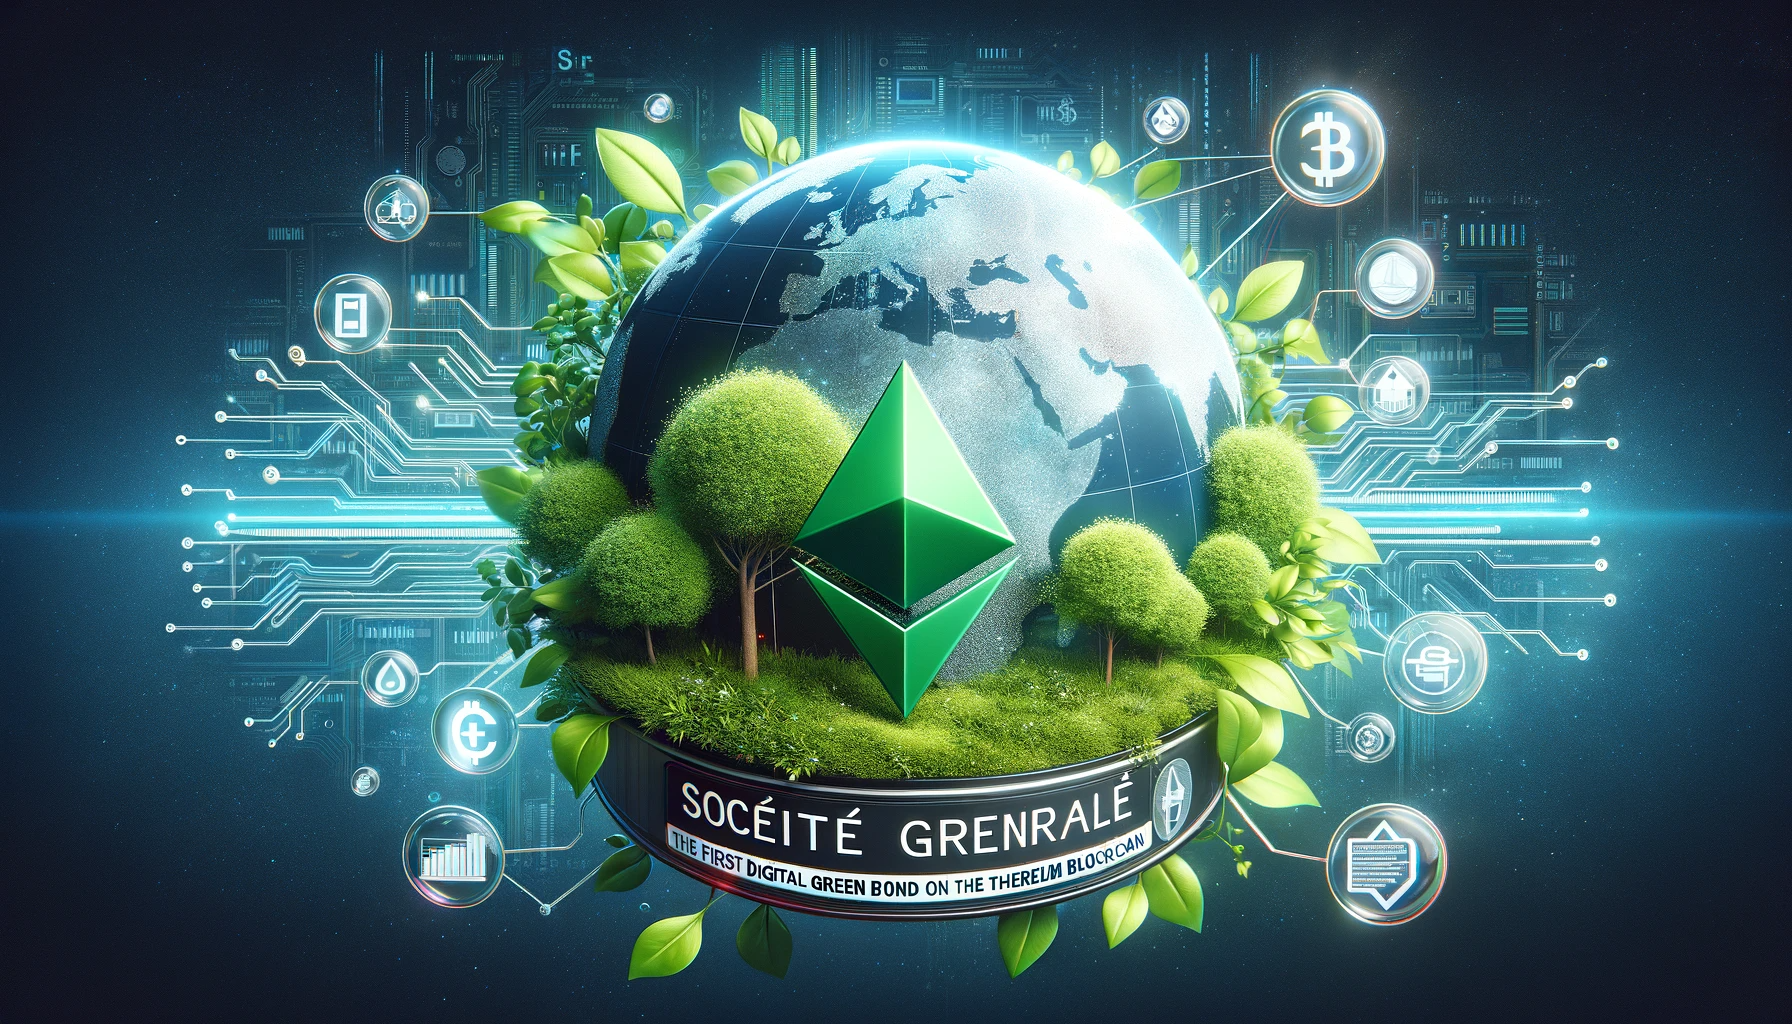 Revolution im Finanzsektor: Societe Generale lanciert ersten digitalen grünen Bond auf Ethereum-Blockchain